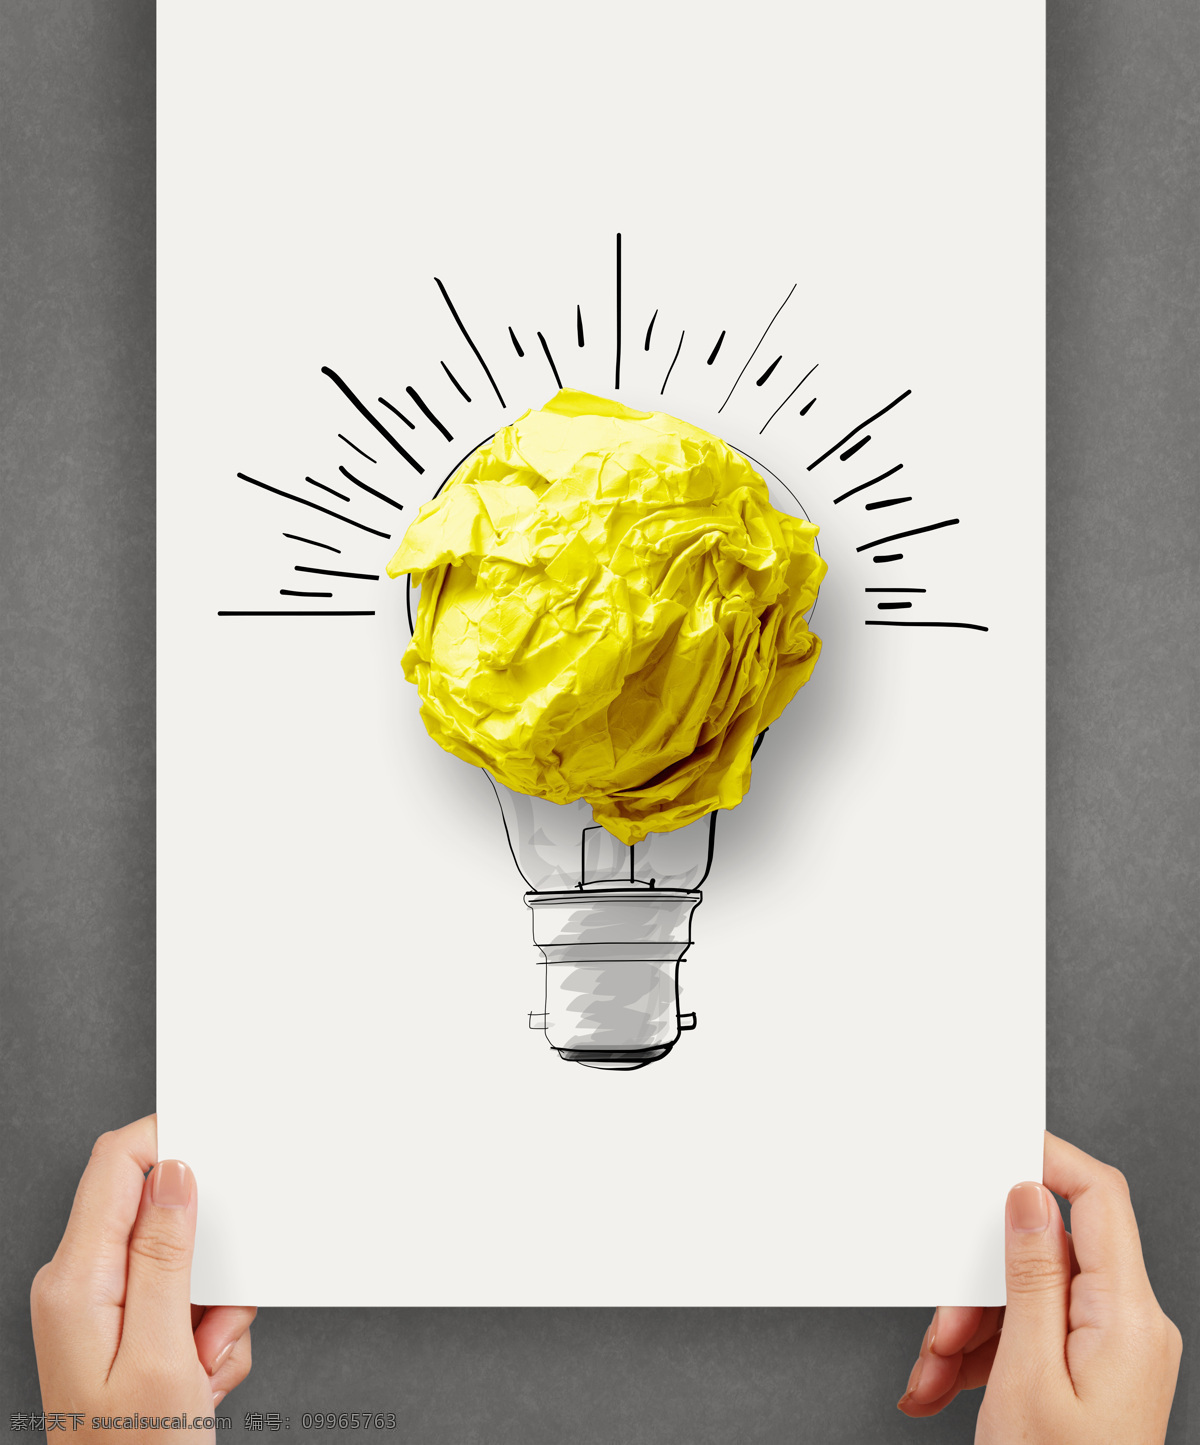 发光 电灯泡 废纸 纸团 电灯 手绘电灯 创意想法 创新思维 其他类别 生活百科